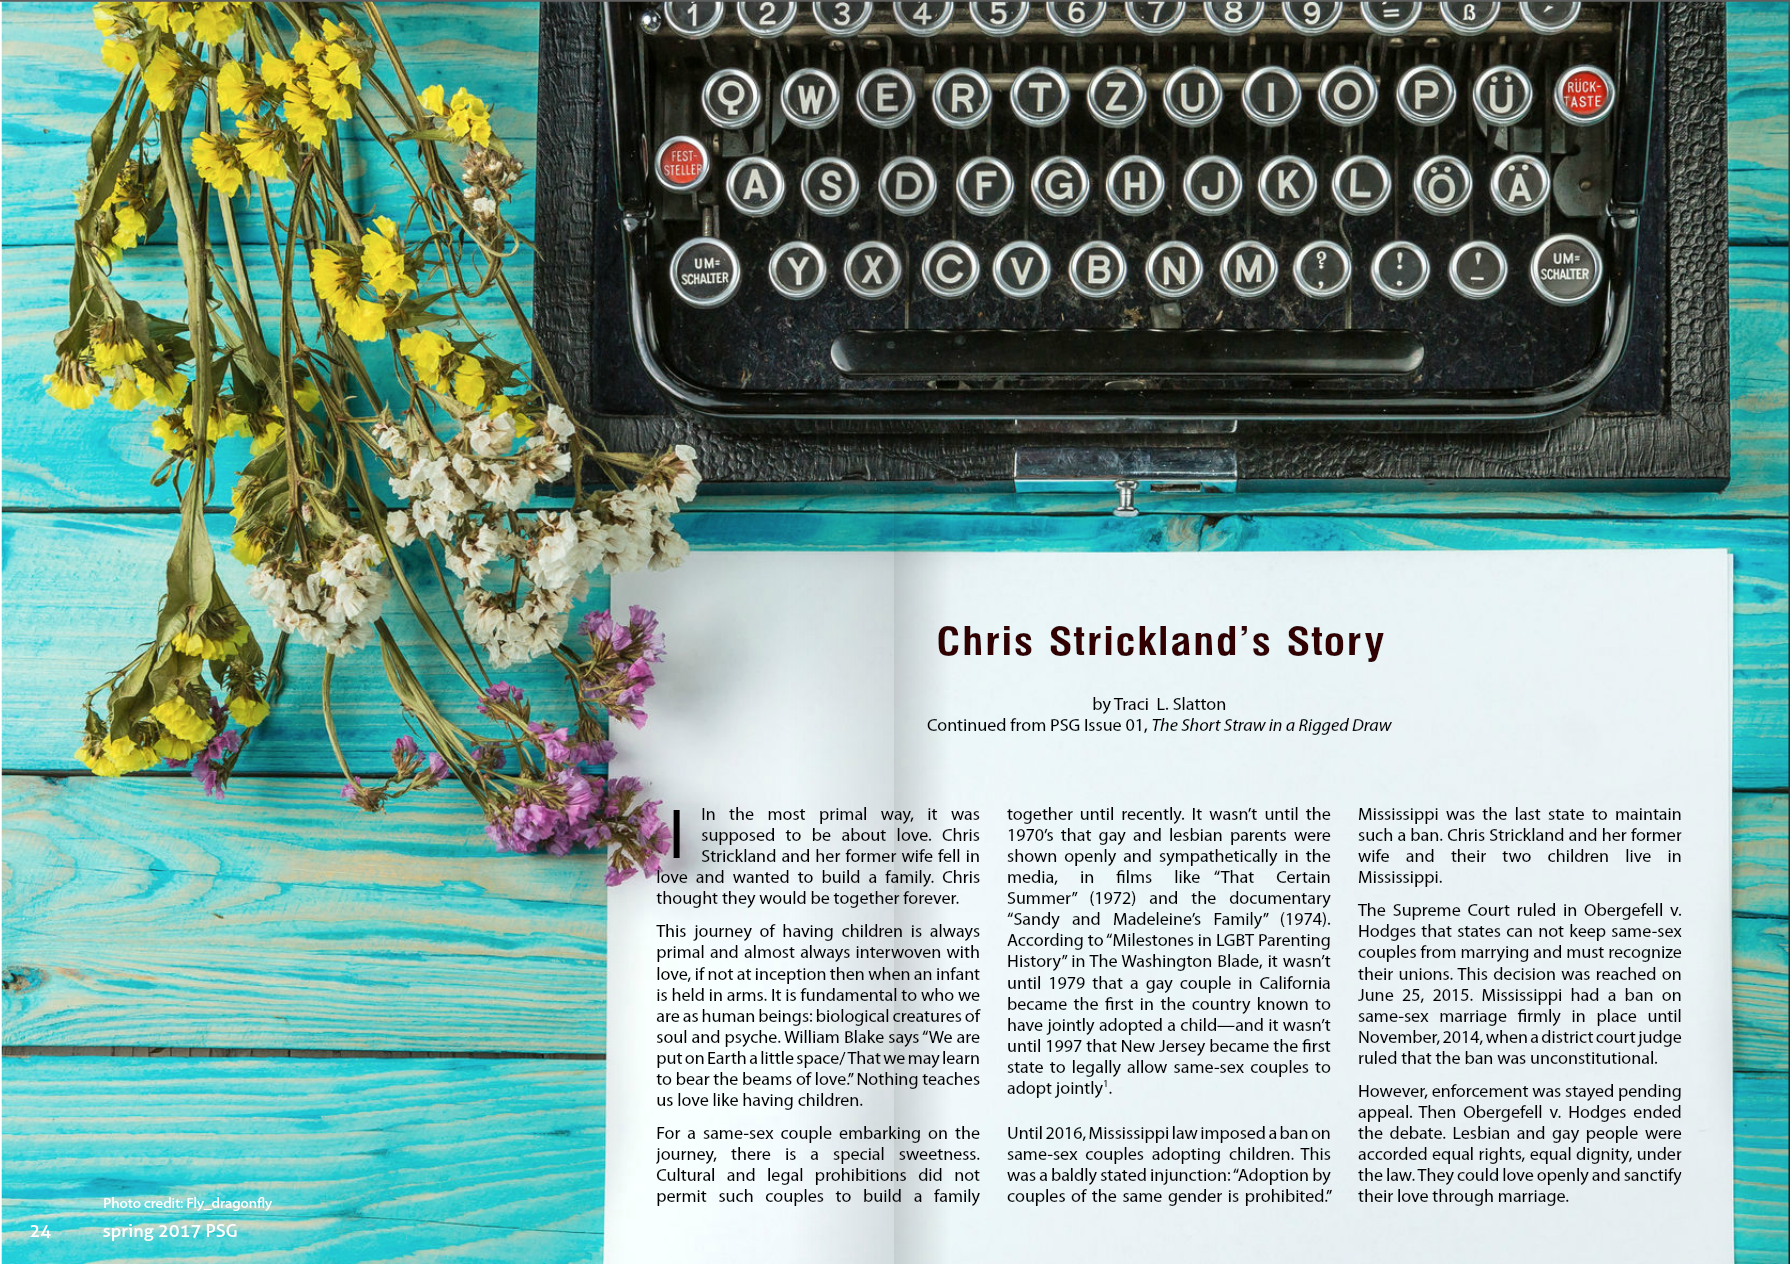 Chris Strickland's story